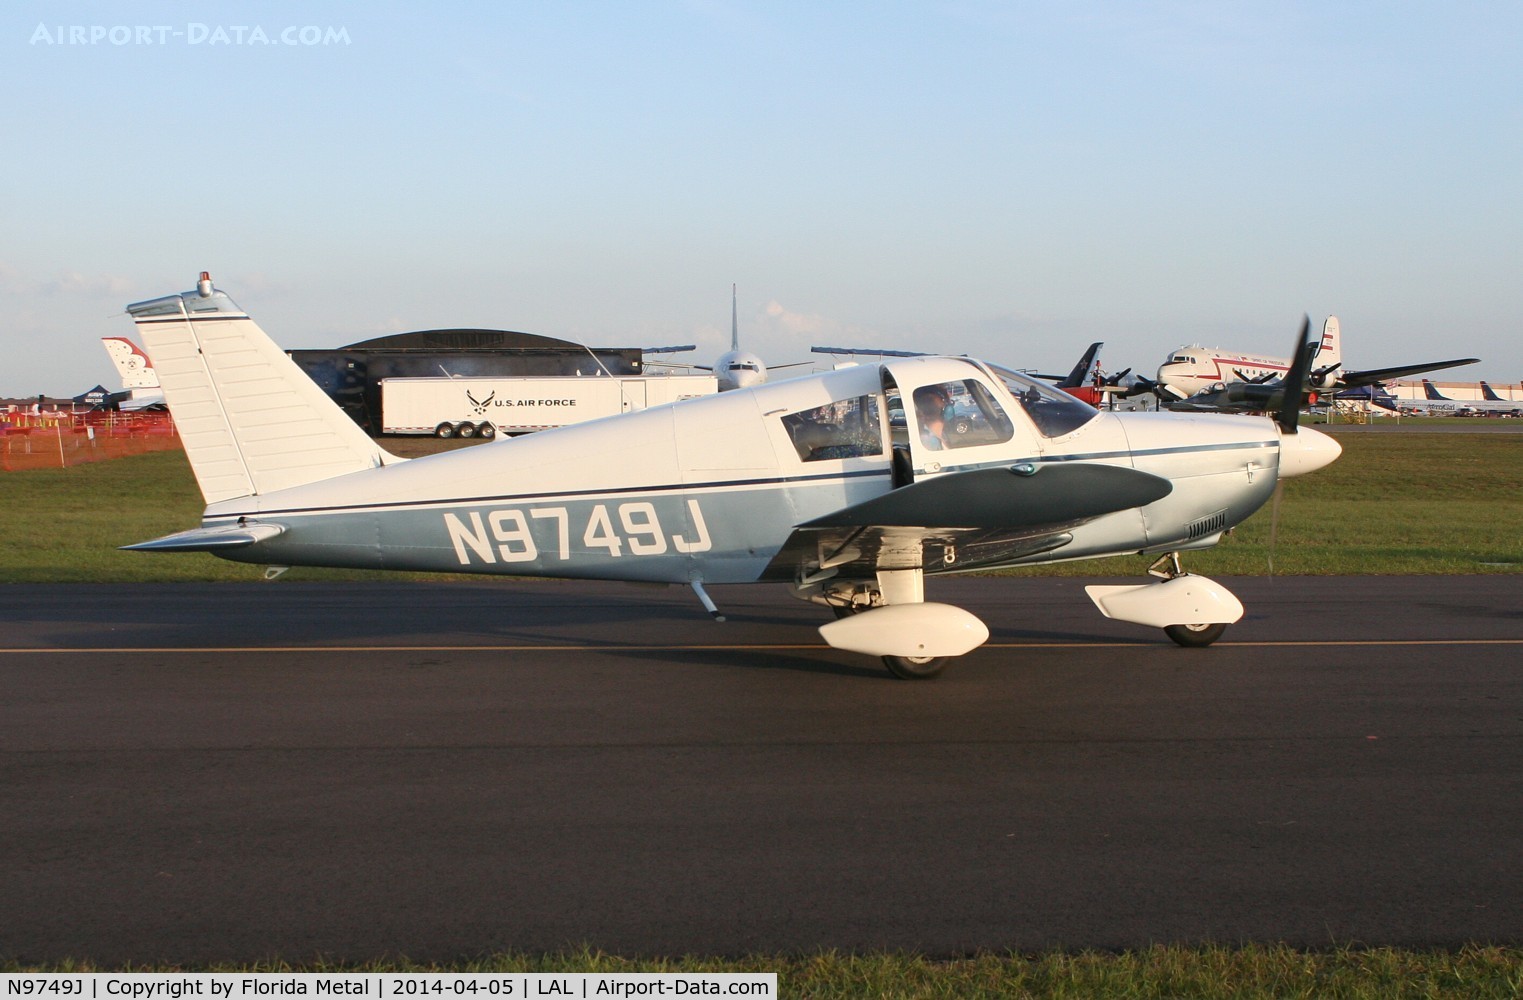 N9749J, 1967 Piper PA-28-180 C/N 28-3935, PA-28-180